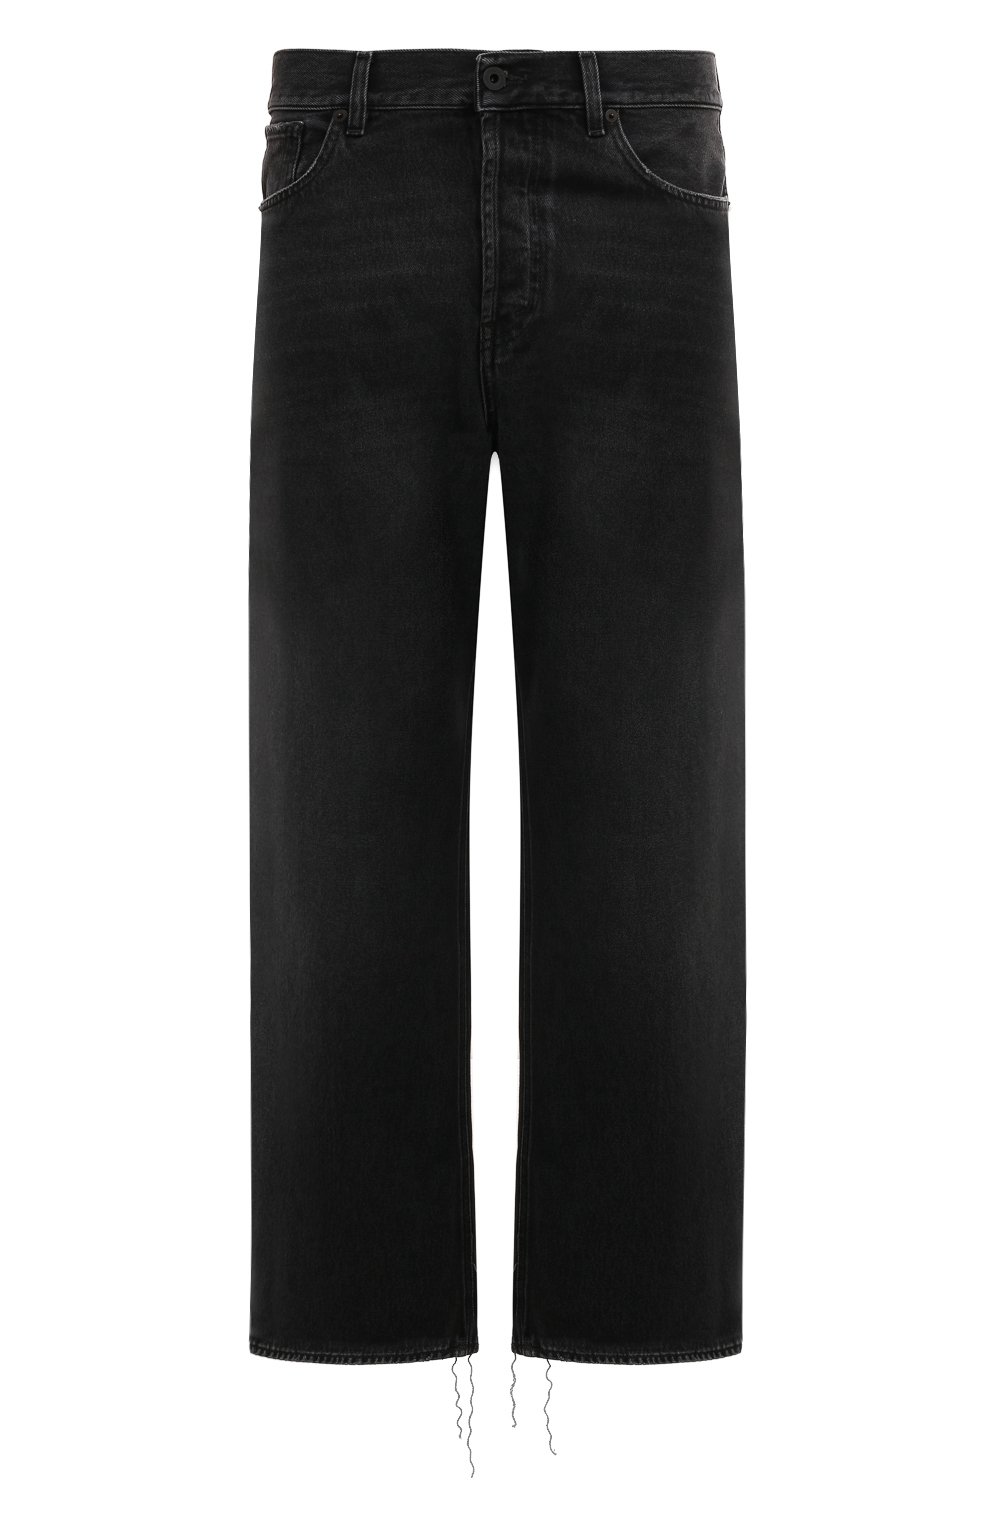 Фото Мужские черные джинсы PENCE, арт. 74581.D663 JOSE'-55 Италия 74581.D663 JOSE'-55 